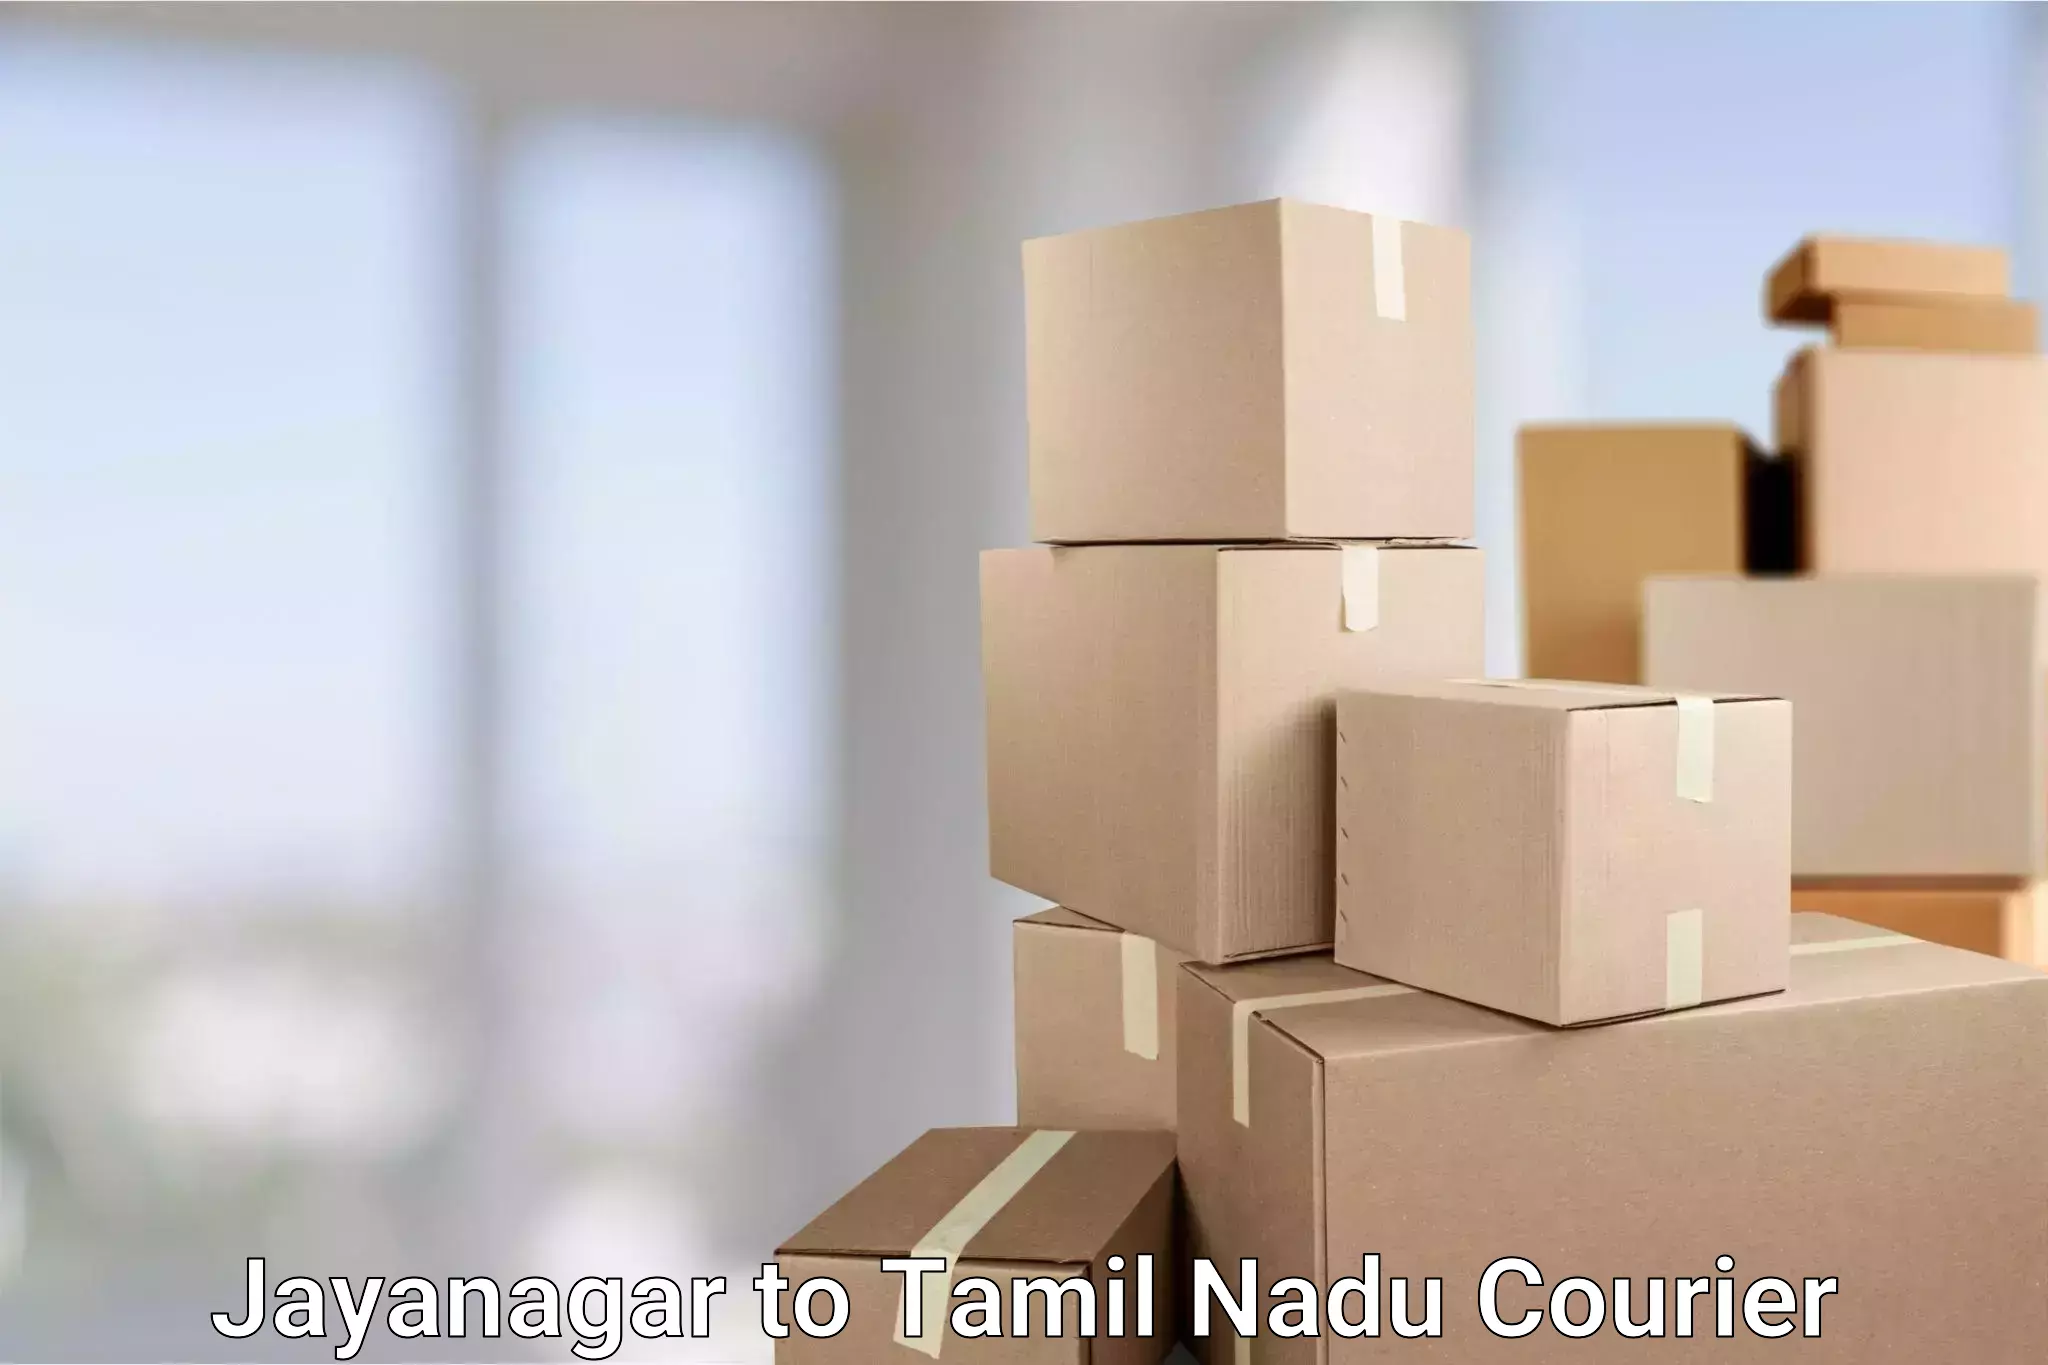 Rural area delivery in Jayanagar to Tamil Nadu